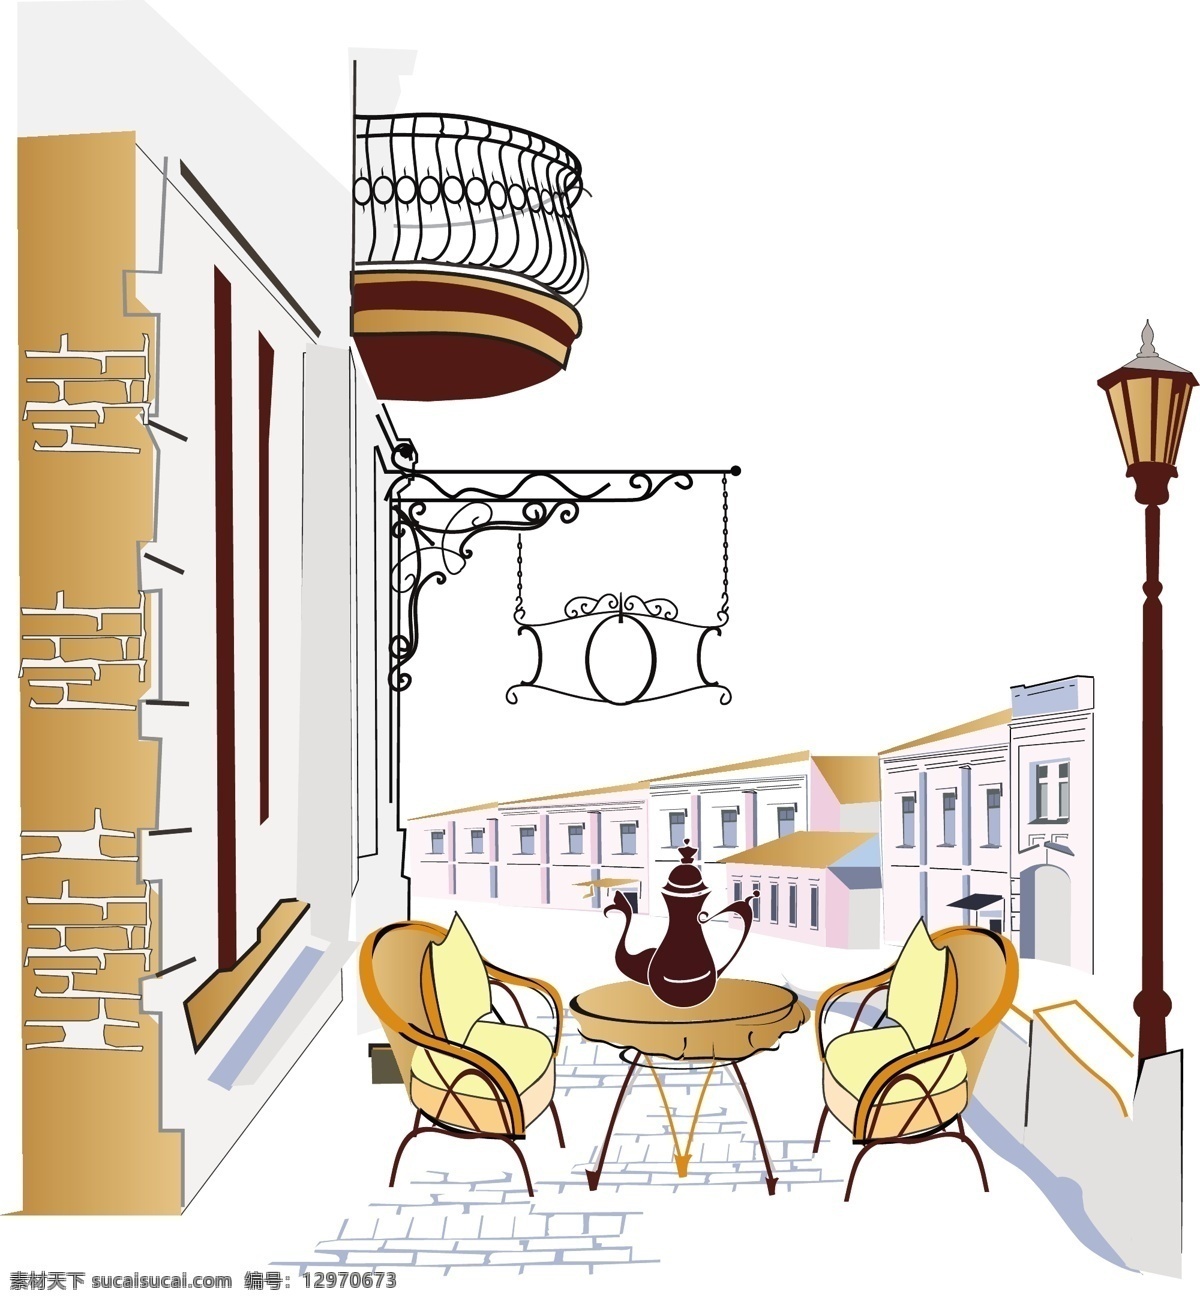 路边 咖啡 座 矢量 标签 灯光 建筑 街道 咖啡机 卡通 书桌 休闲 阳台 砖墙 椅子 咖啡座 illustrator 座椅 矢量图 矢量人物